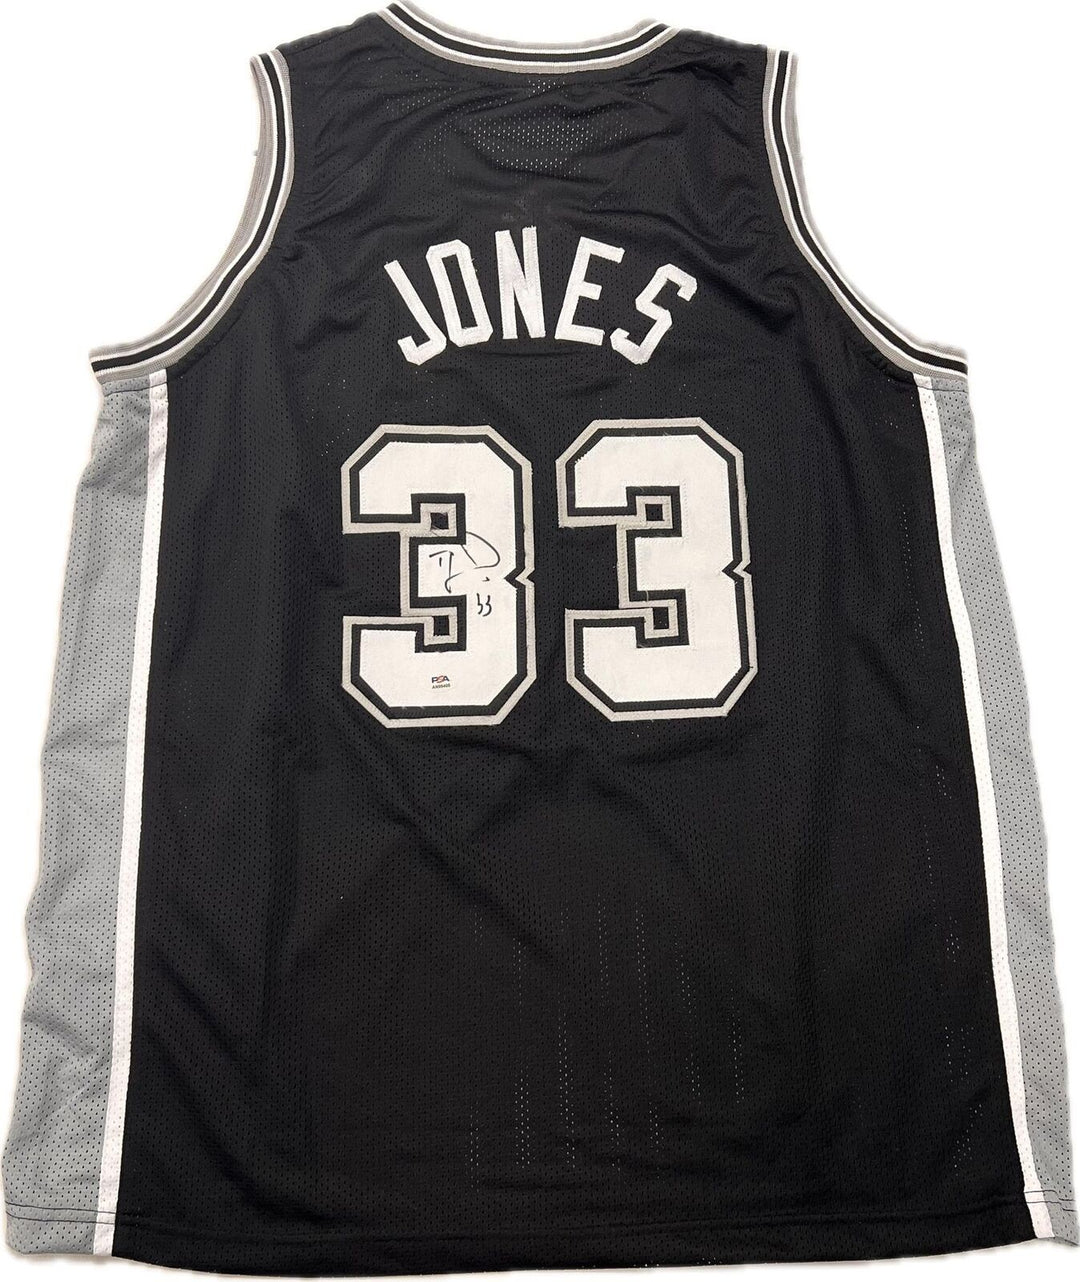 TRE JONES signed jersey PSA/DNA San Antonio Spurs Autographed Image 1